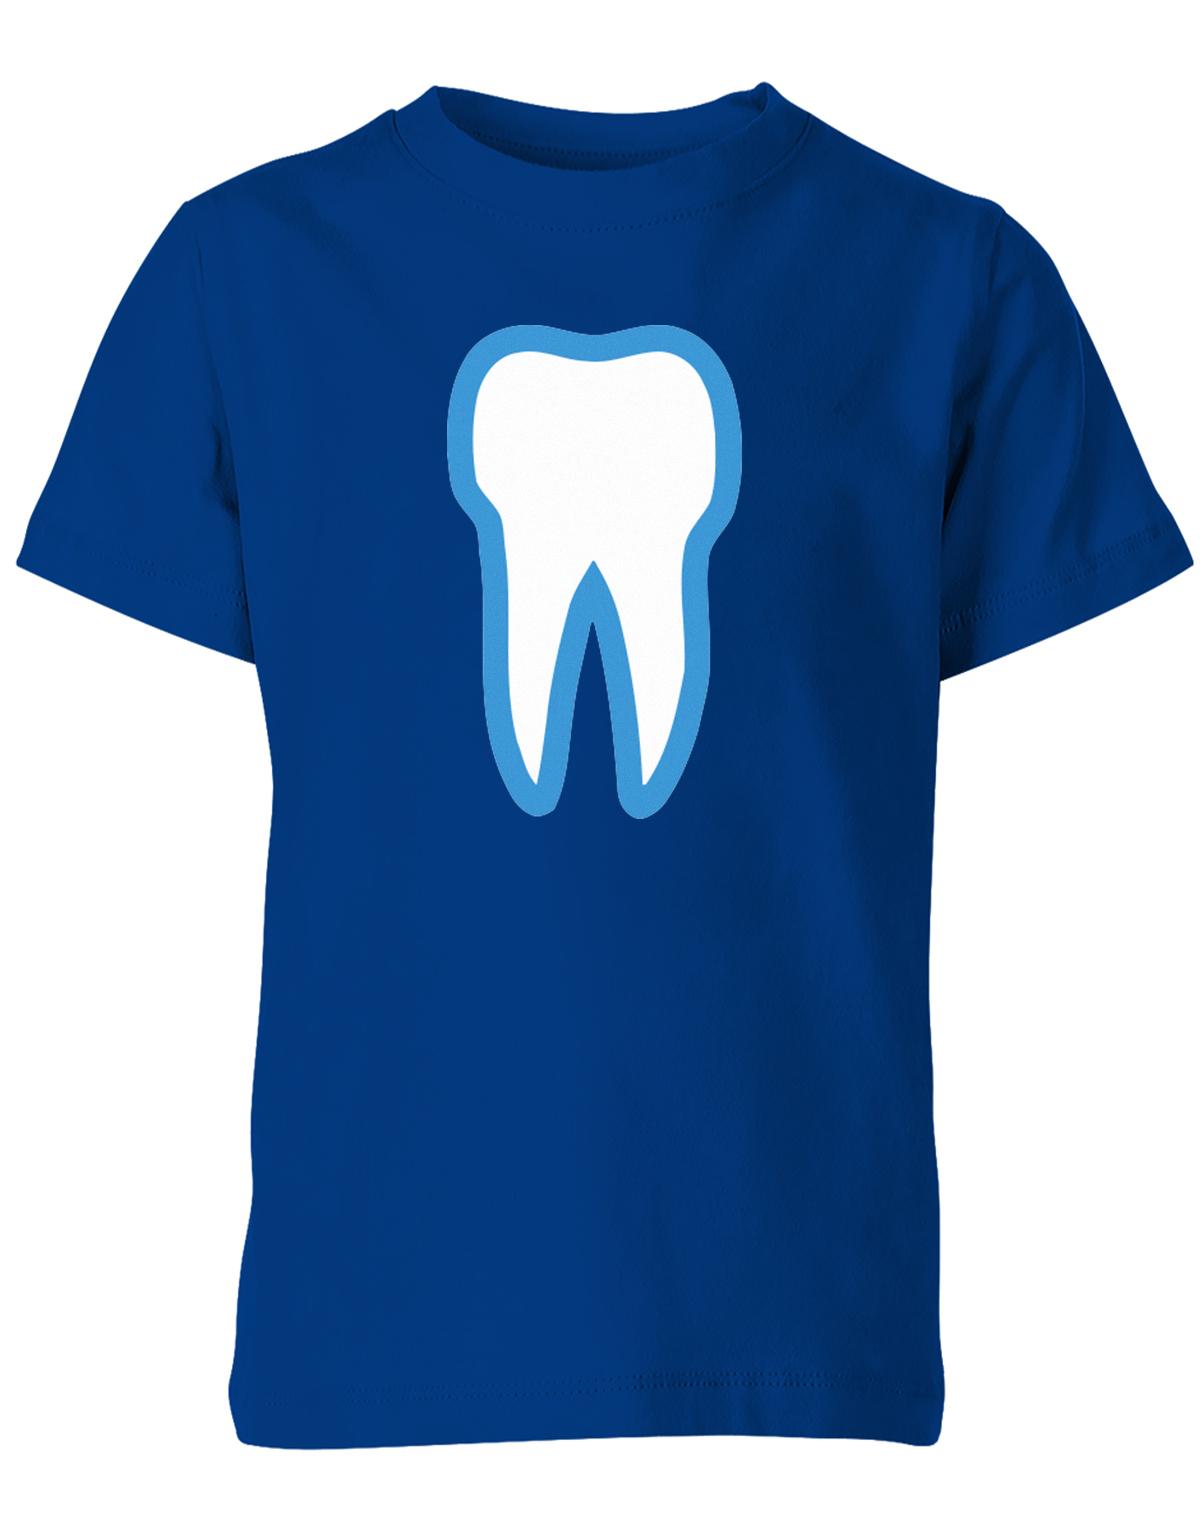 Zahn-kost-m-kinder-shirt-royalblau